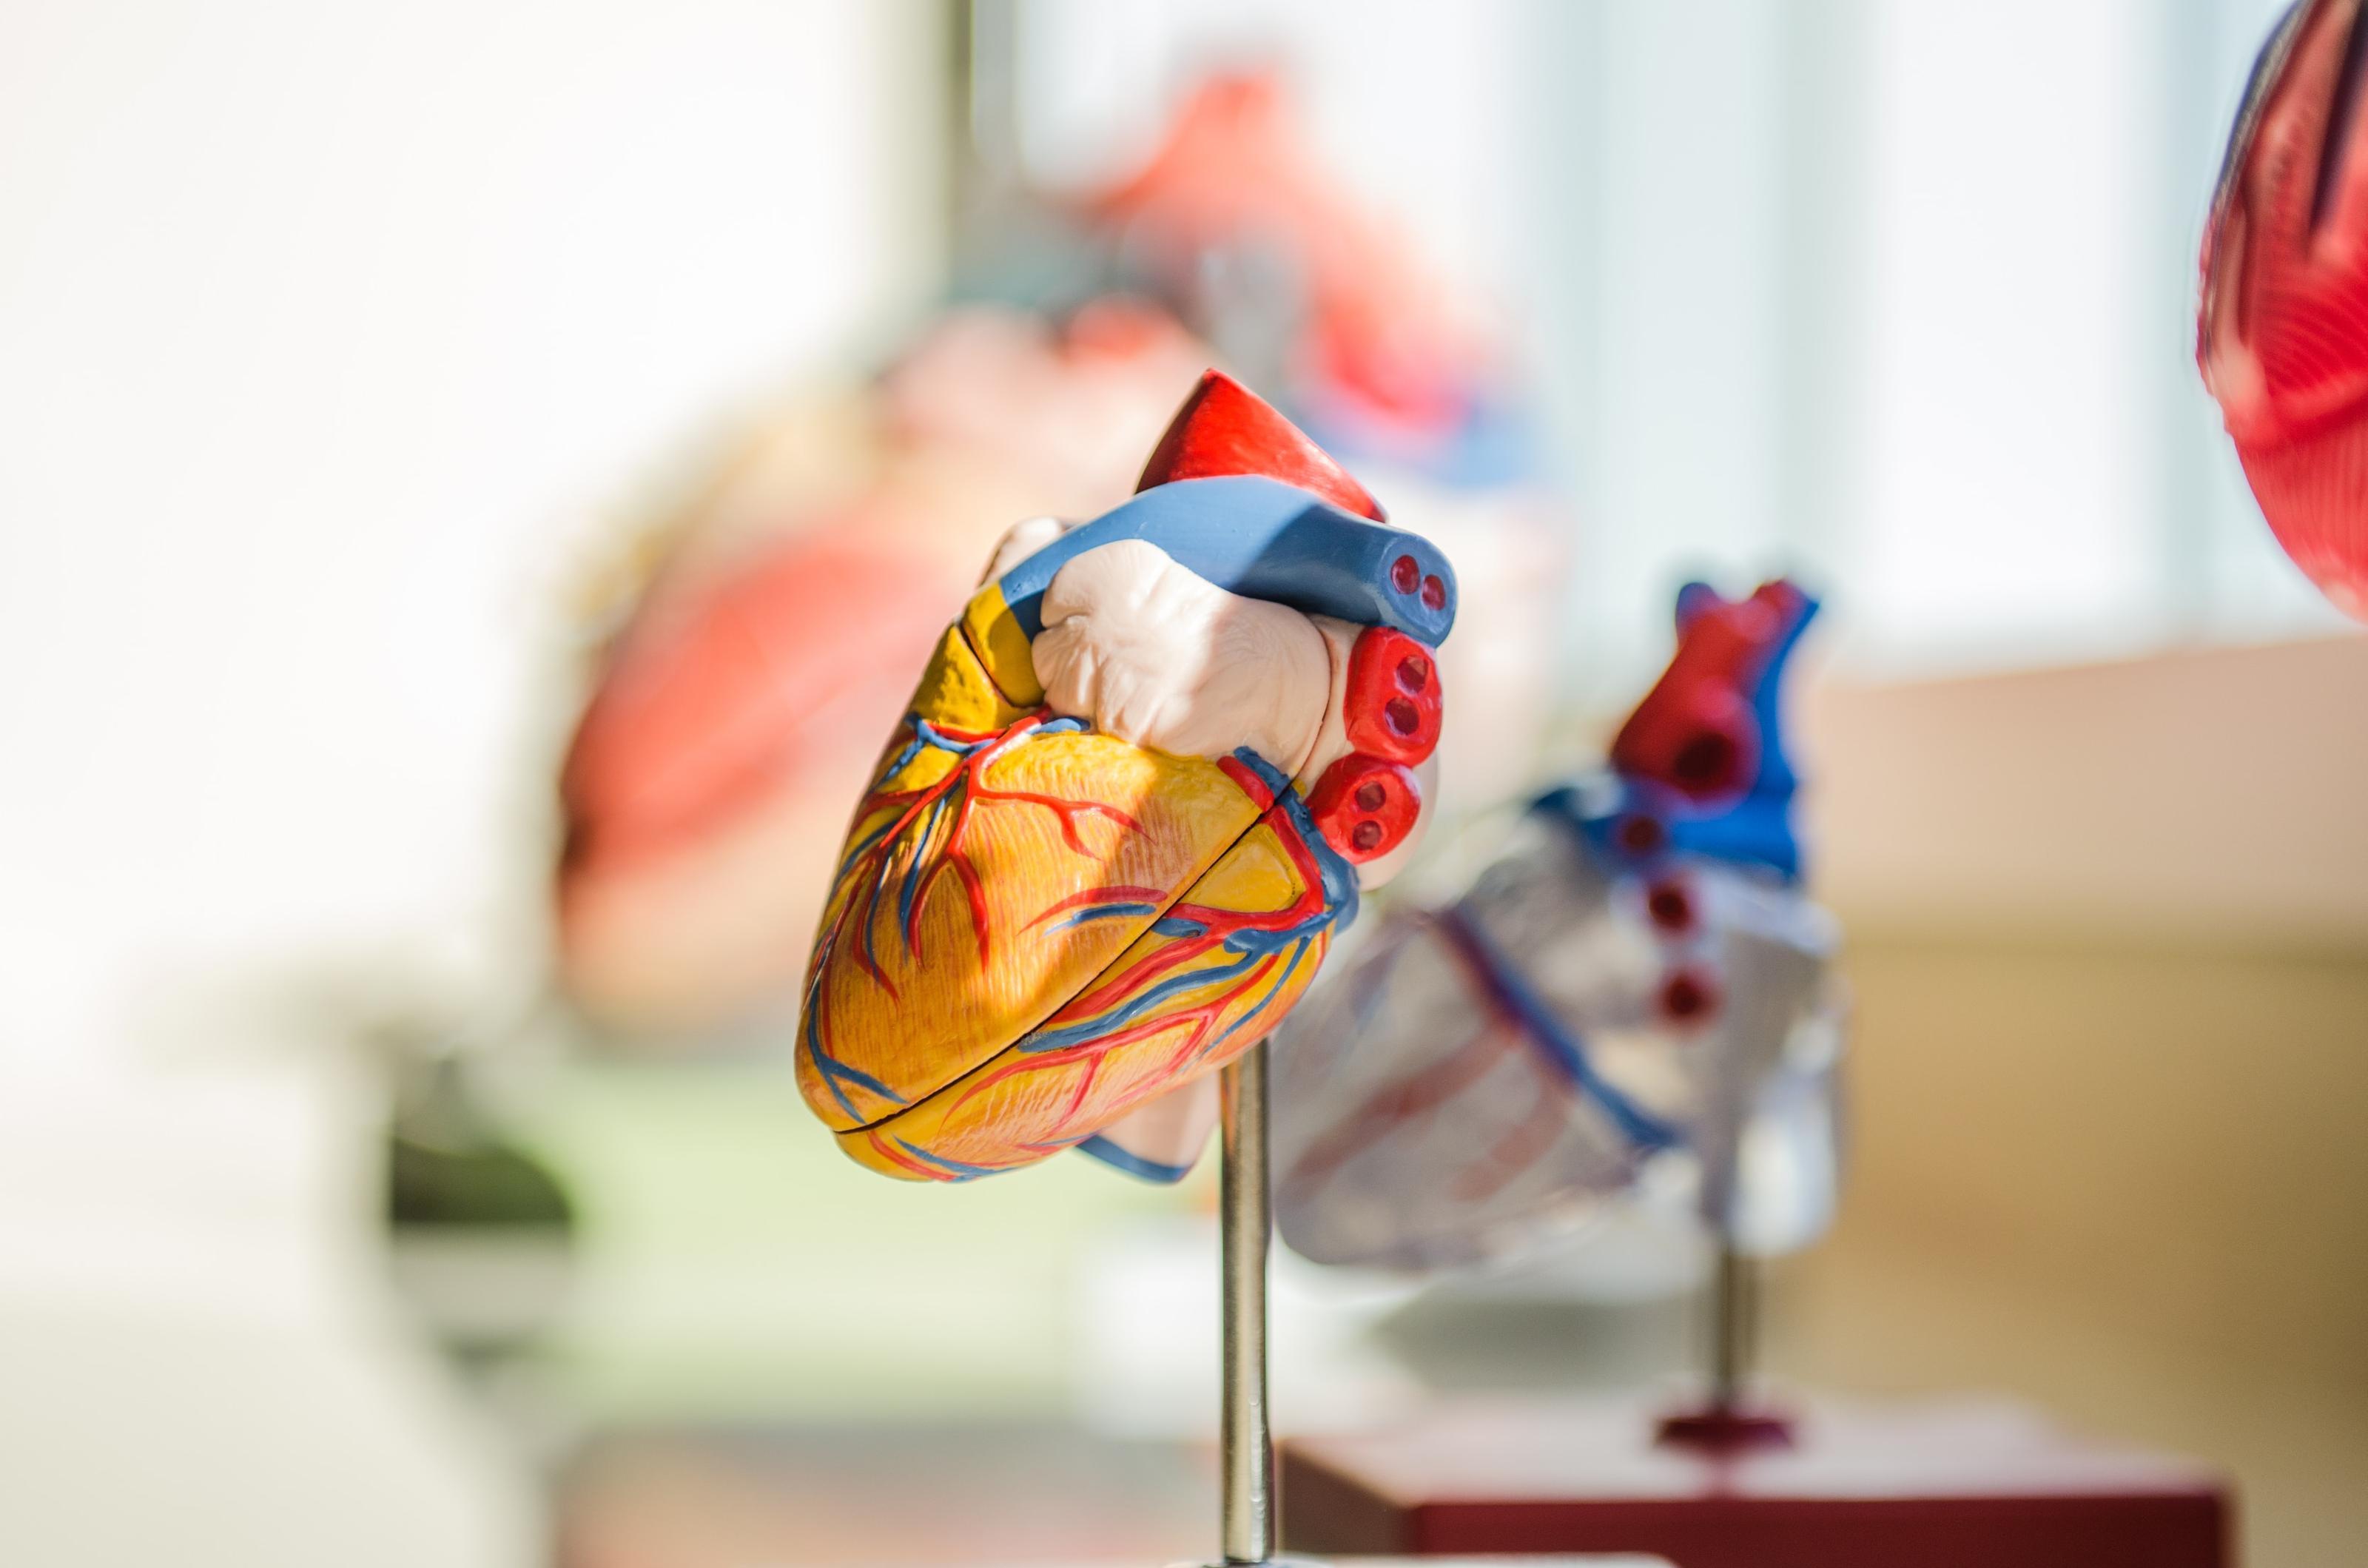 Valeurs cibles de pression artérielle chez les personnes atteintes d'une maladie cardiovasculaire